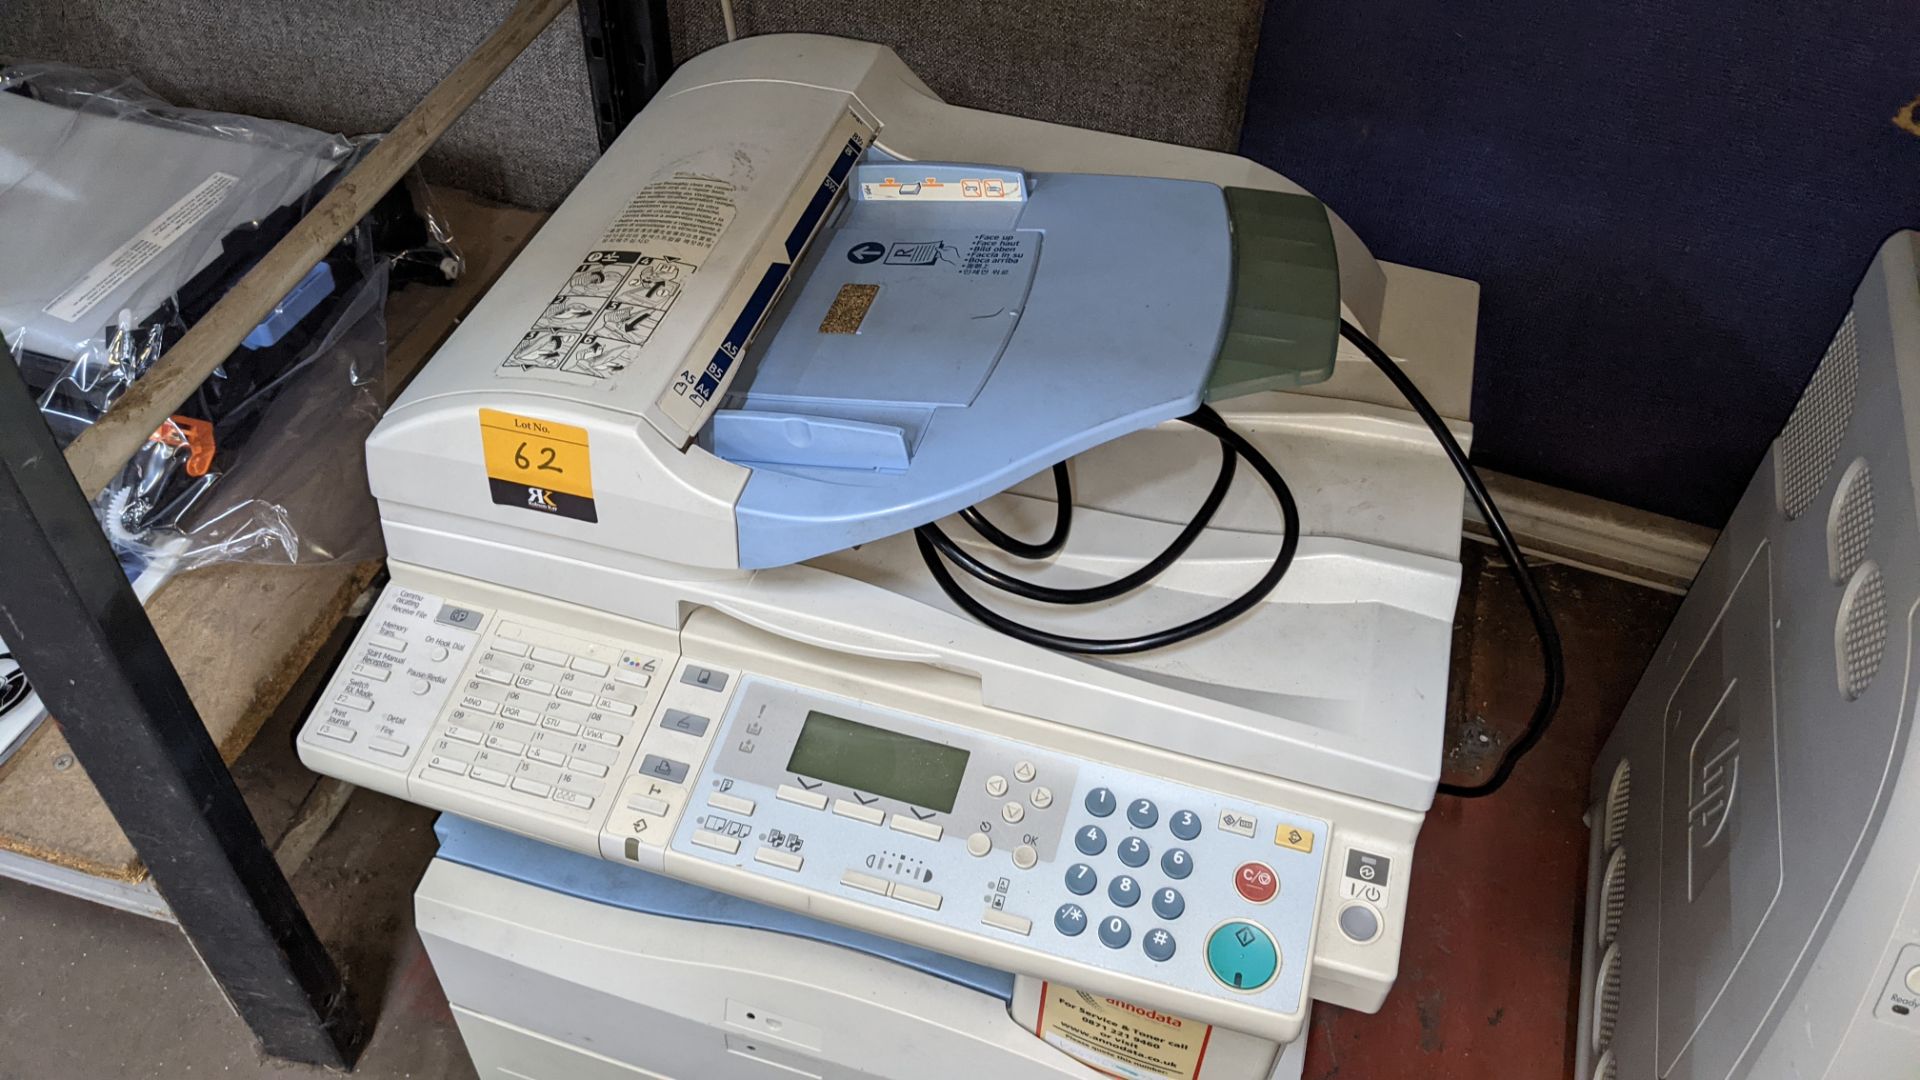 Ricoh Aficio MP171SPF desktop multifunction copier/scanner/fax/printer - Image 3 of 6